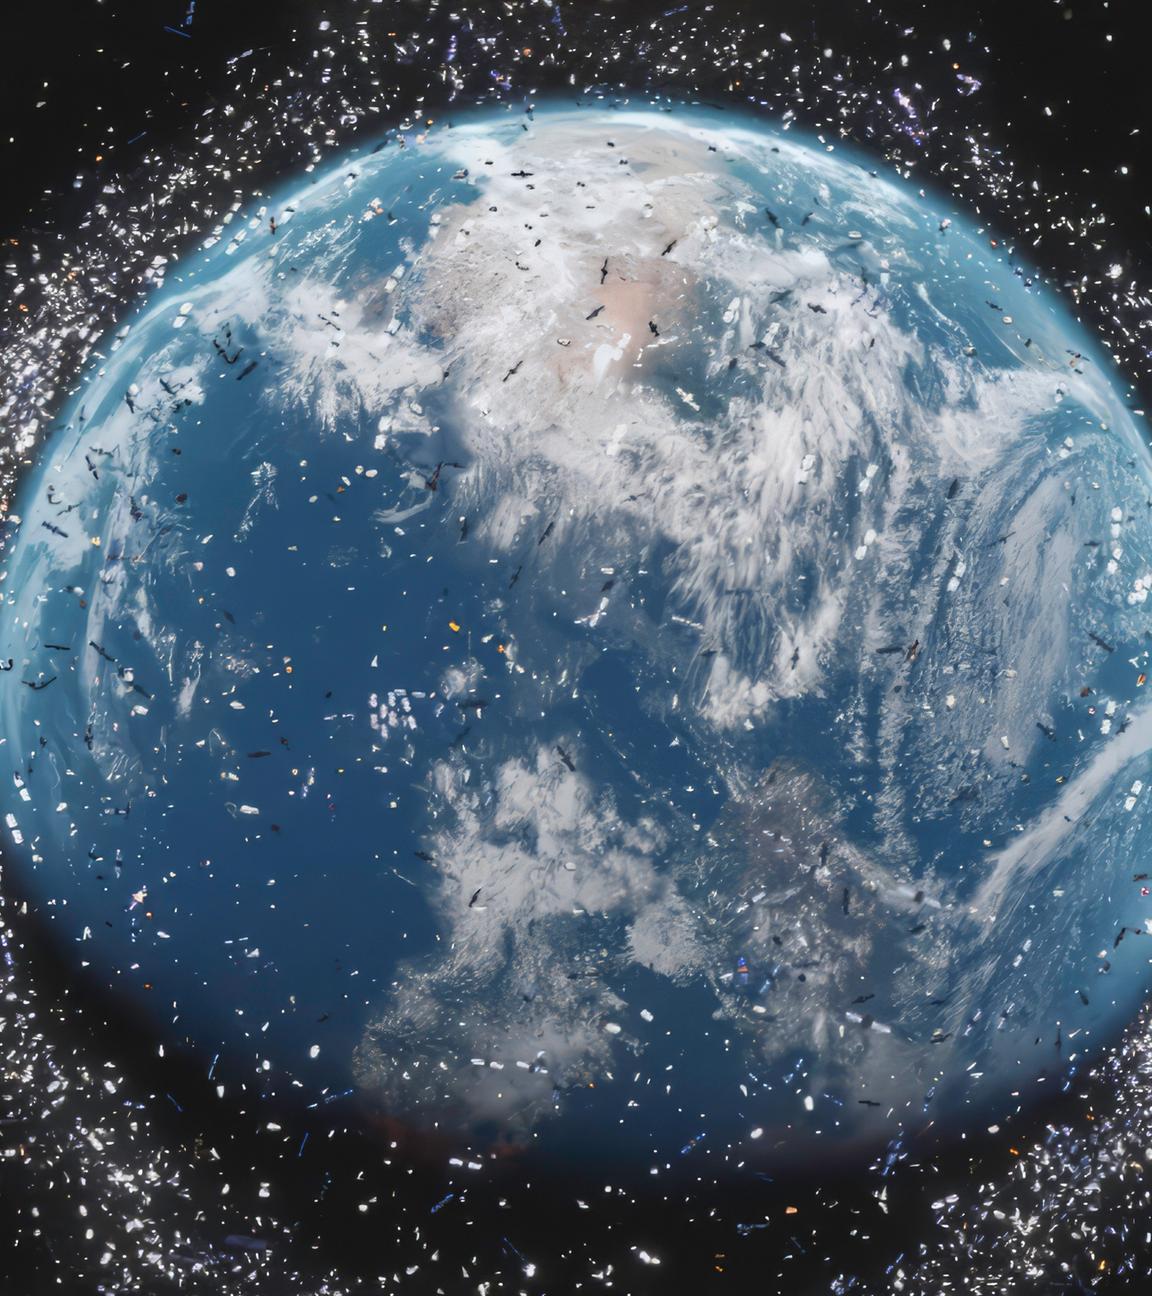 Eine Nahaufnahme der Erdkugel im Weltraum, umgeben von einem Kreis aus vielen kleinen hellen Punkten